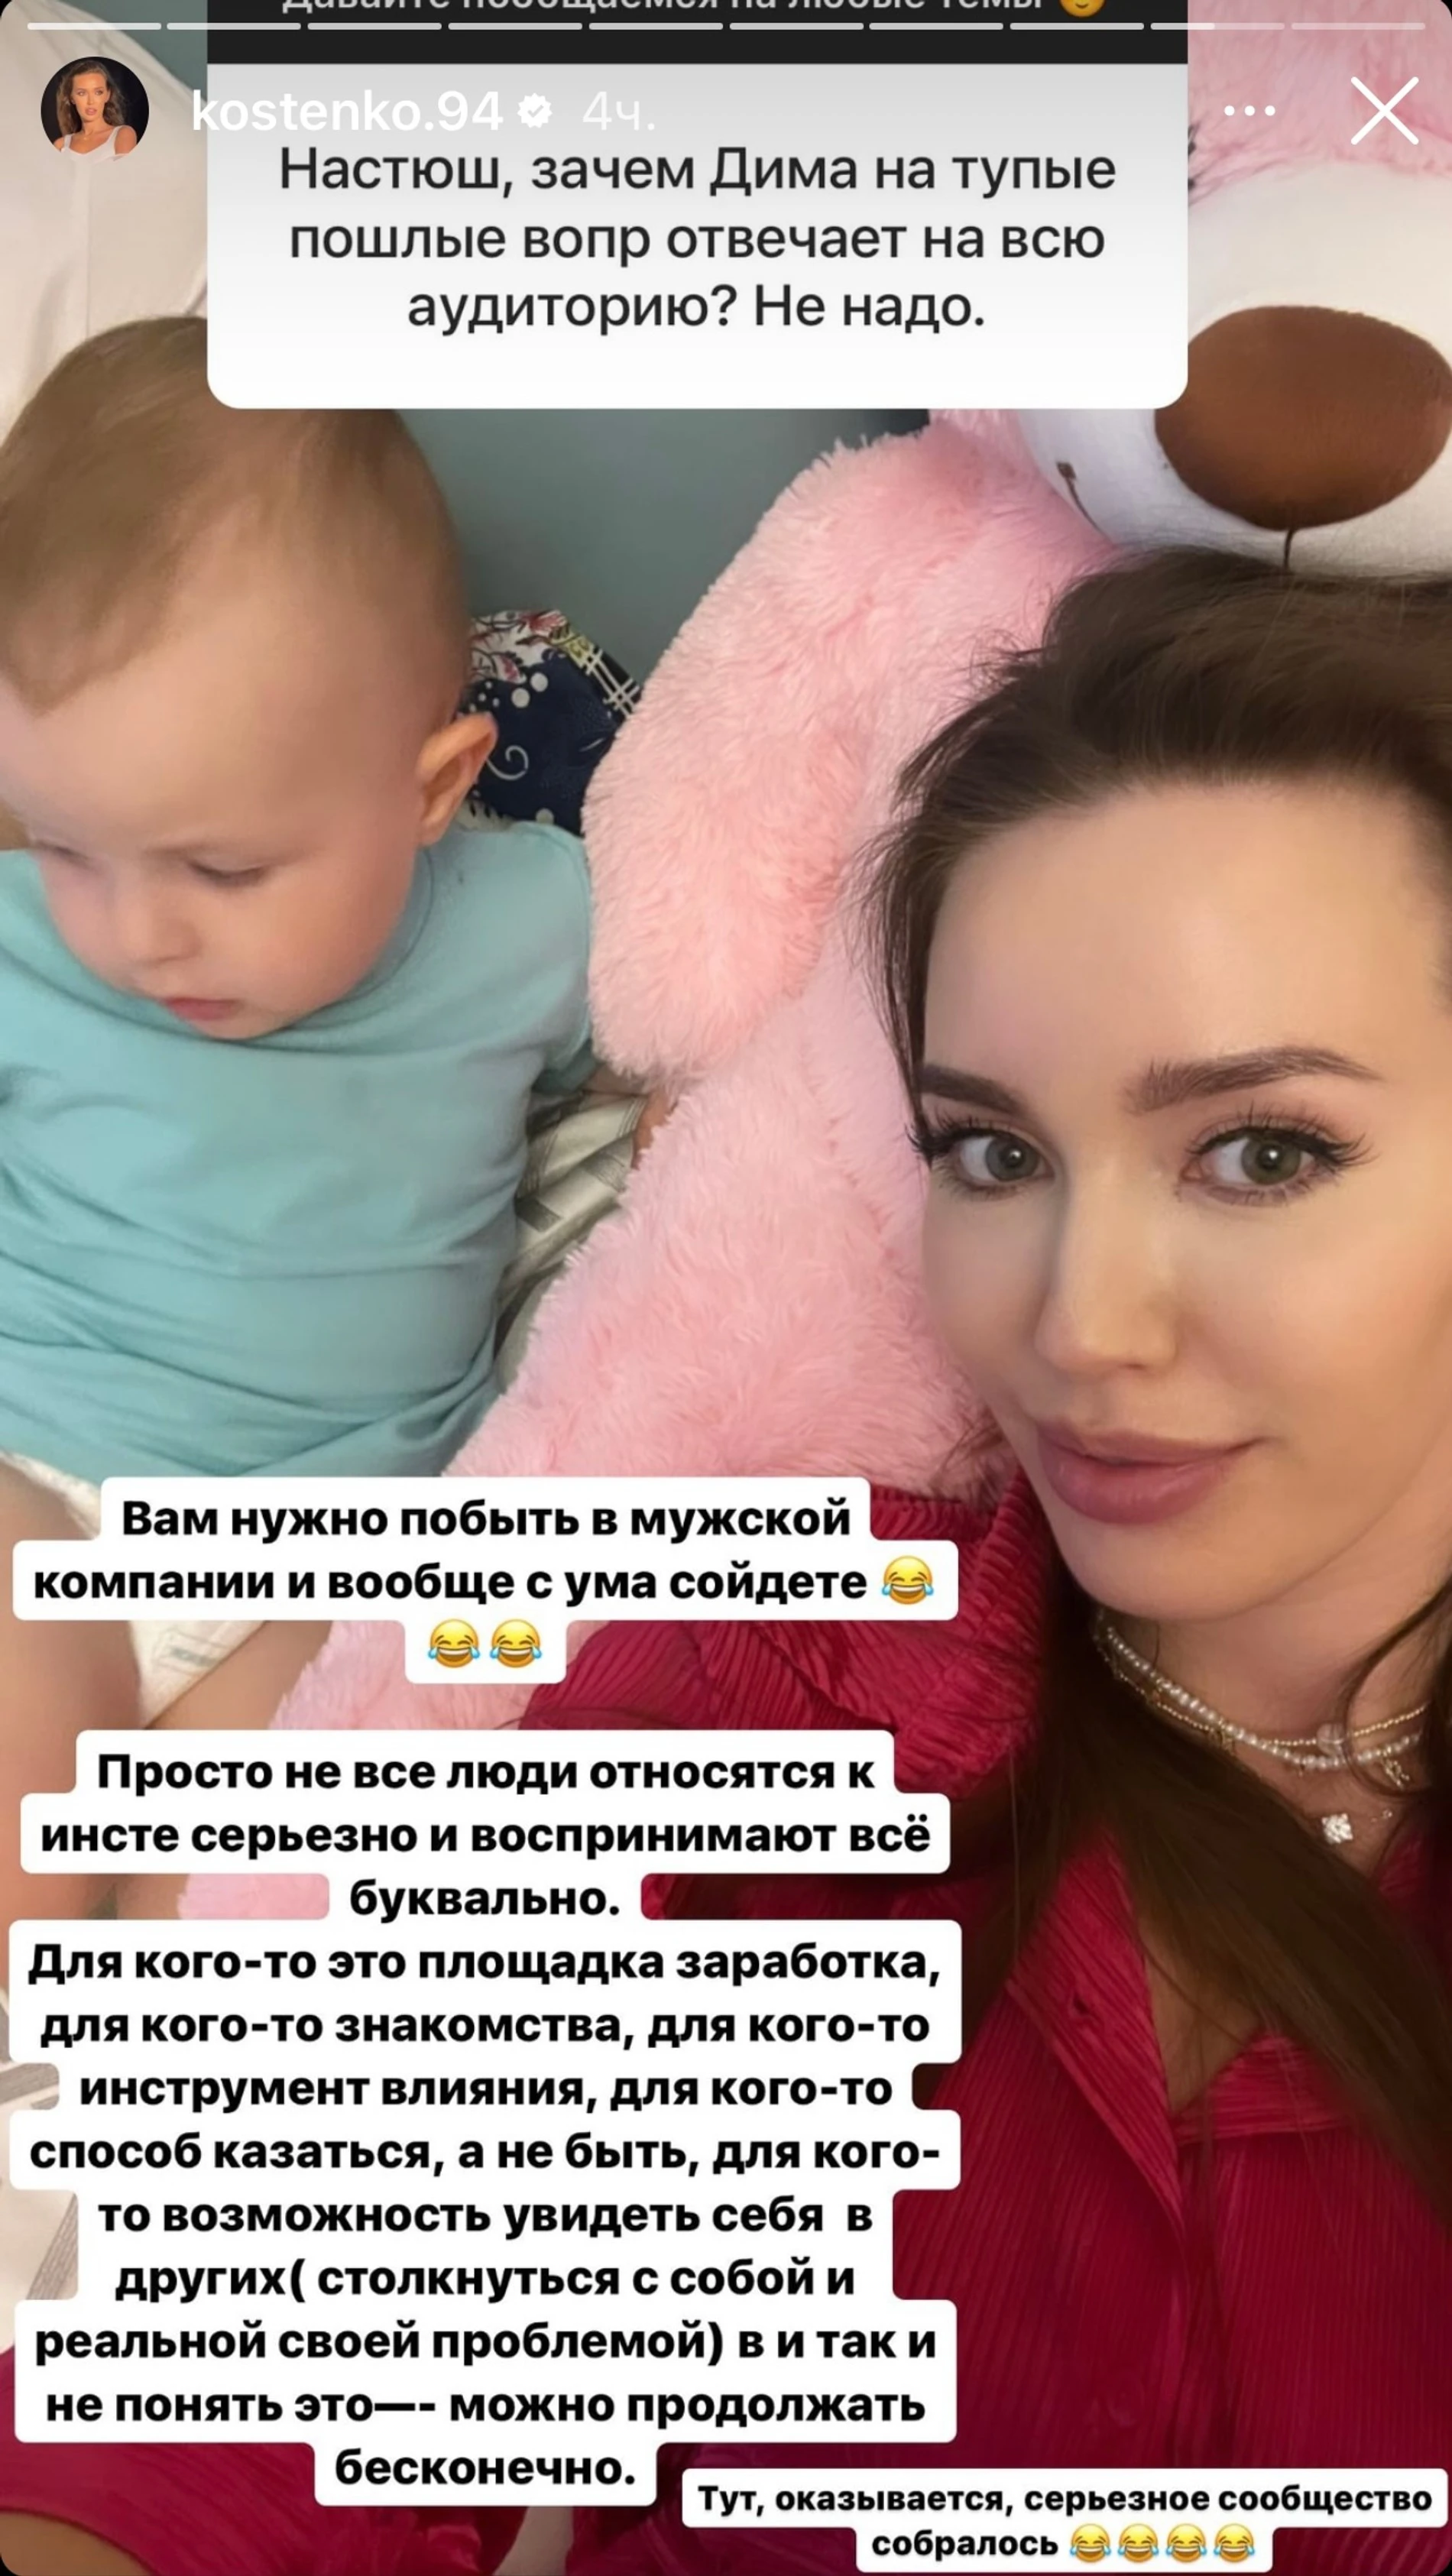 Анастасия Костенко прокомментировала развратное видео, снятое при детях. Фото: Инстаграм (запрещен в РФ) Костенко